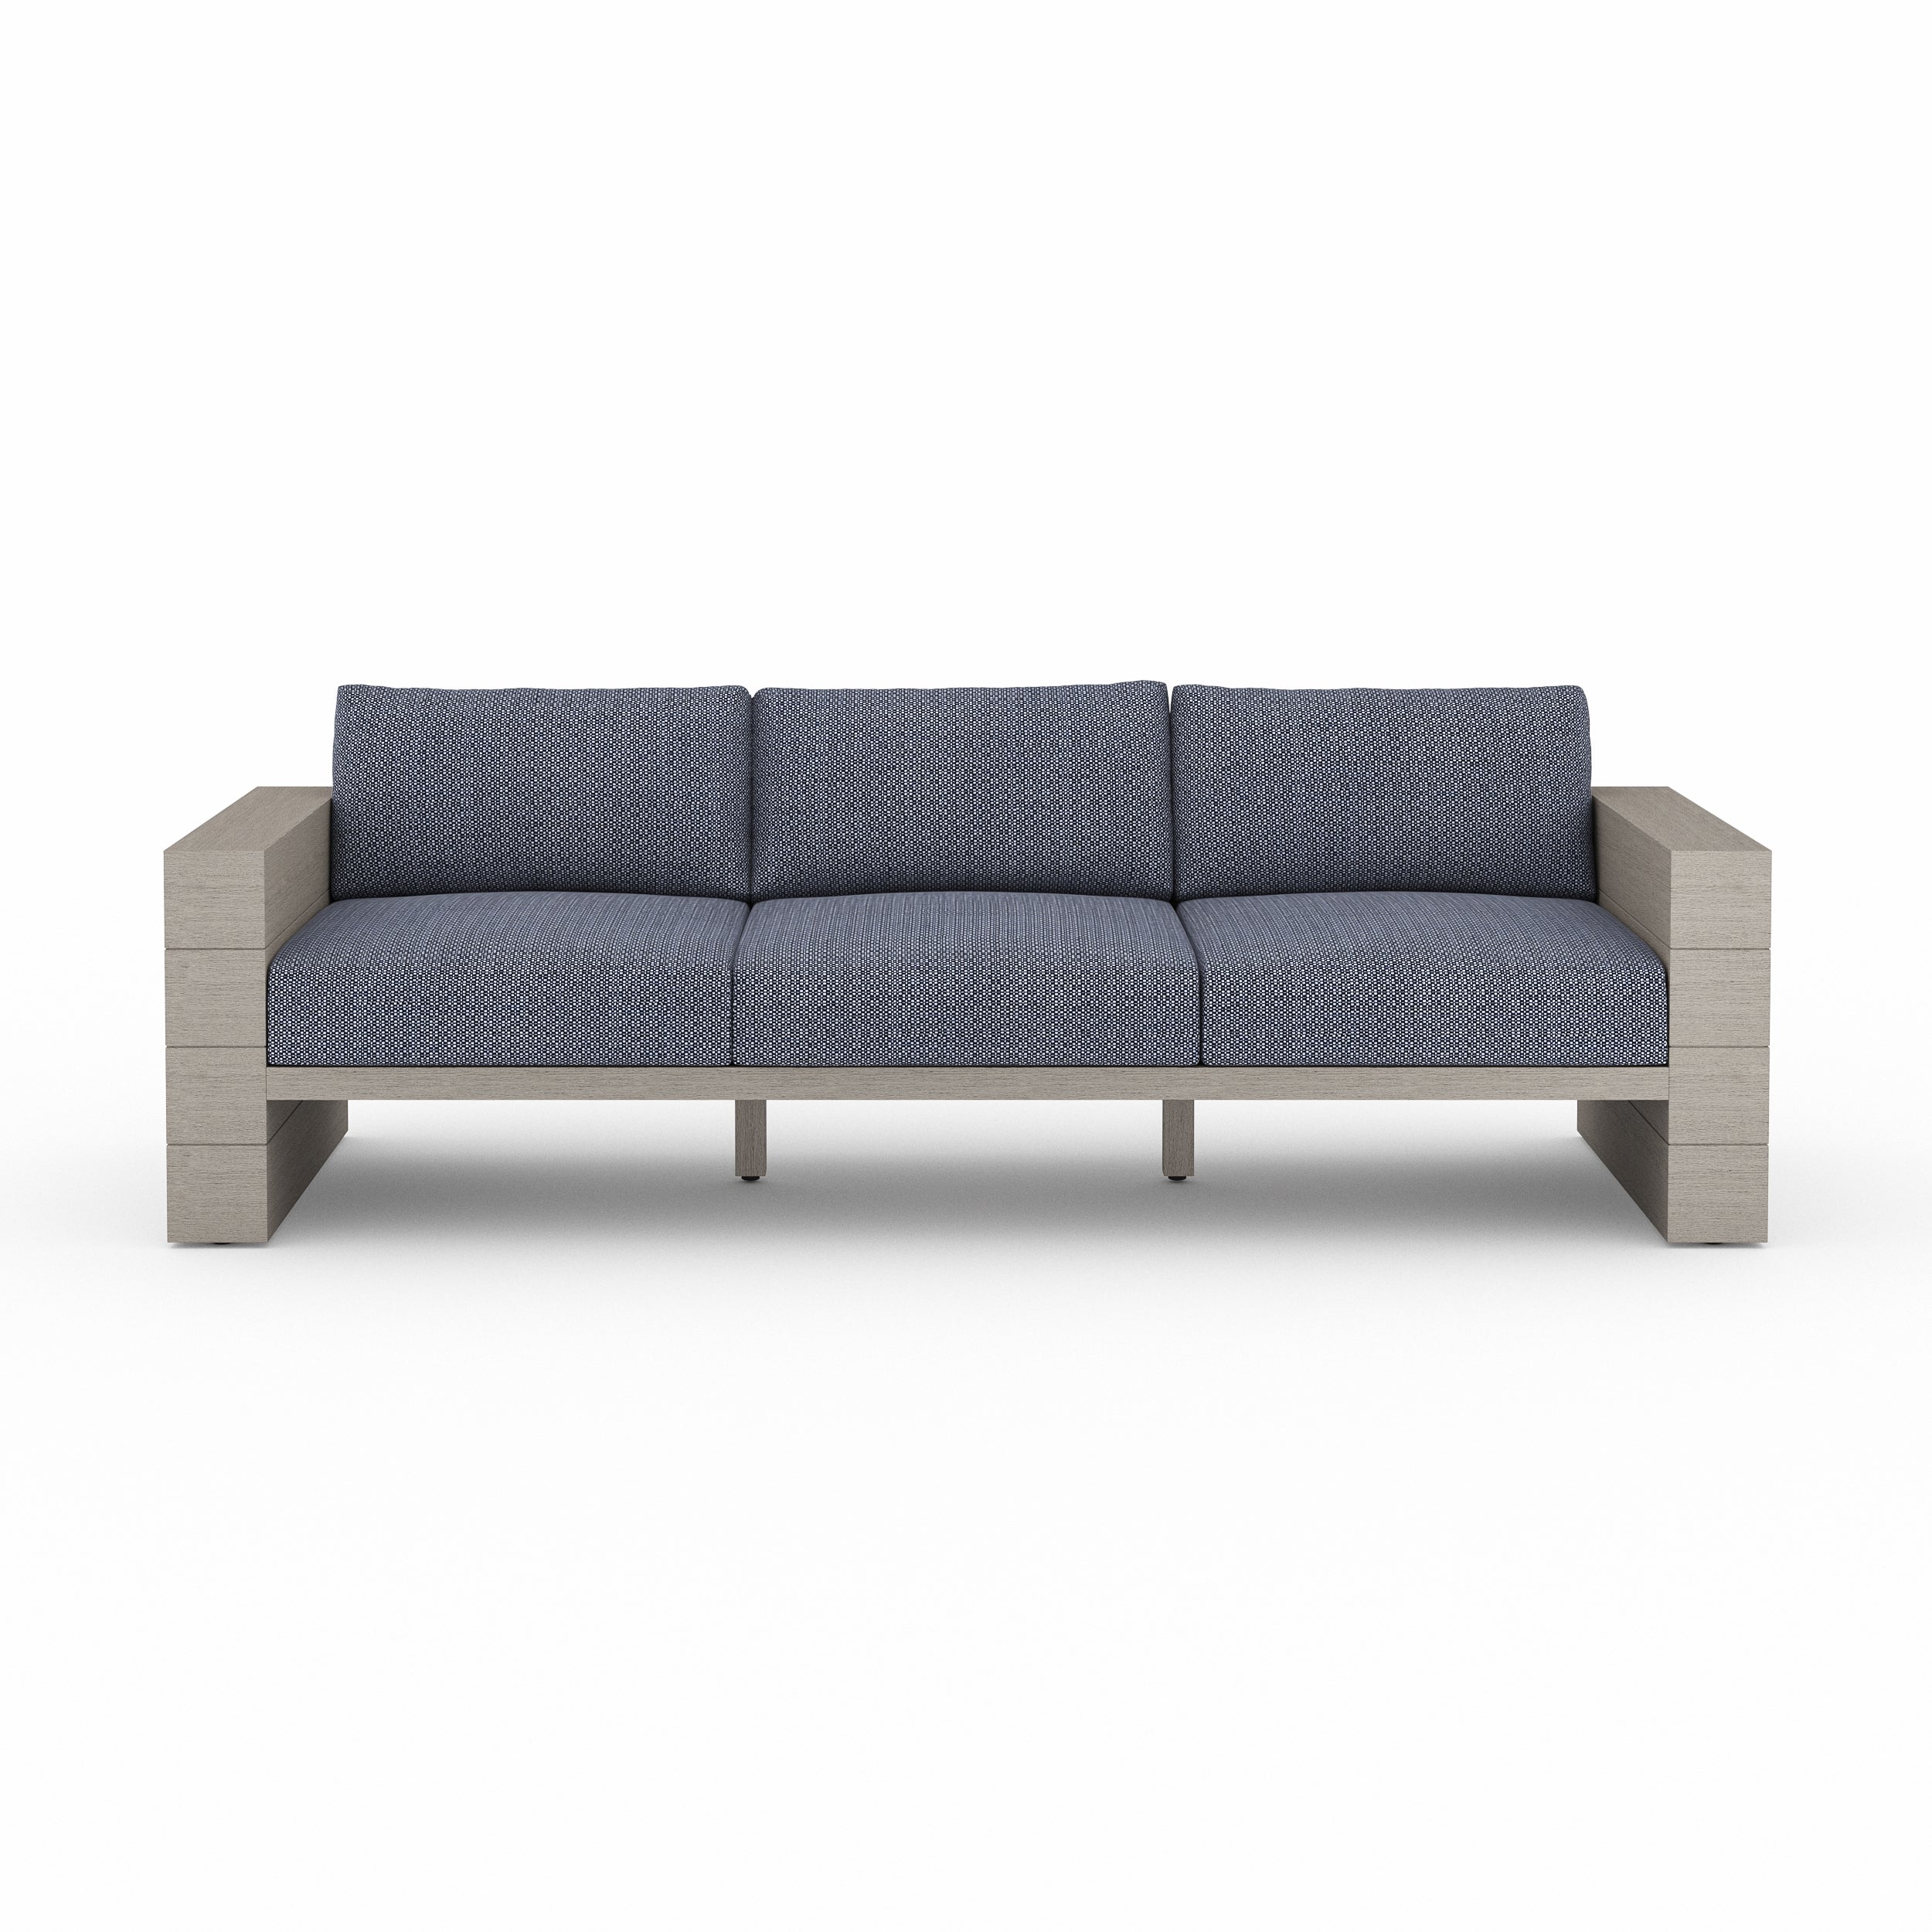 Leroy Outdoor Sofa, Weathered Grey